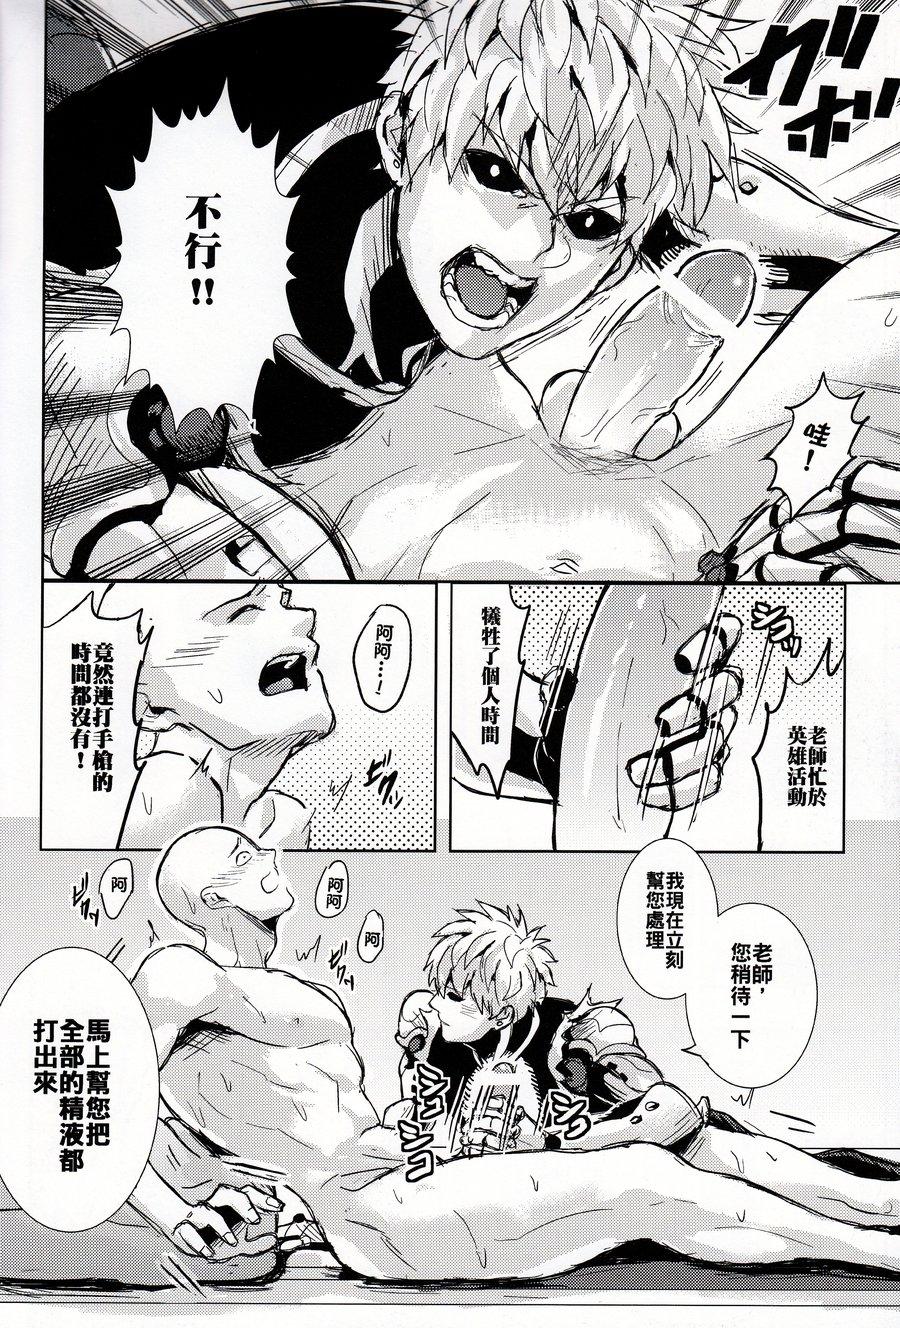 Pounding Sensei no Kokan no Kiki wa Ore ga Haijo Shimasu - One punch man Comendo - Page 10